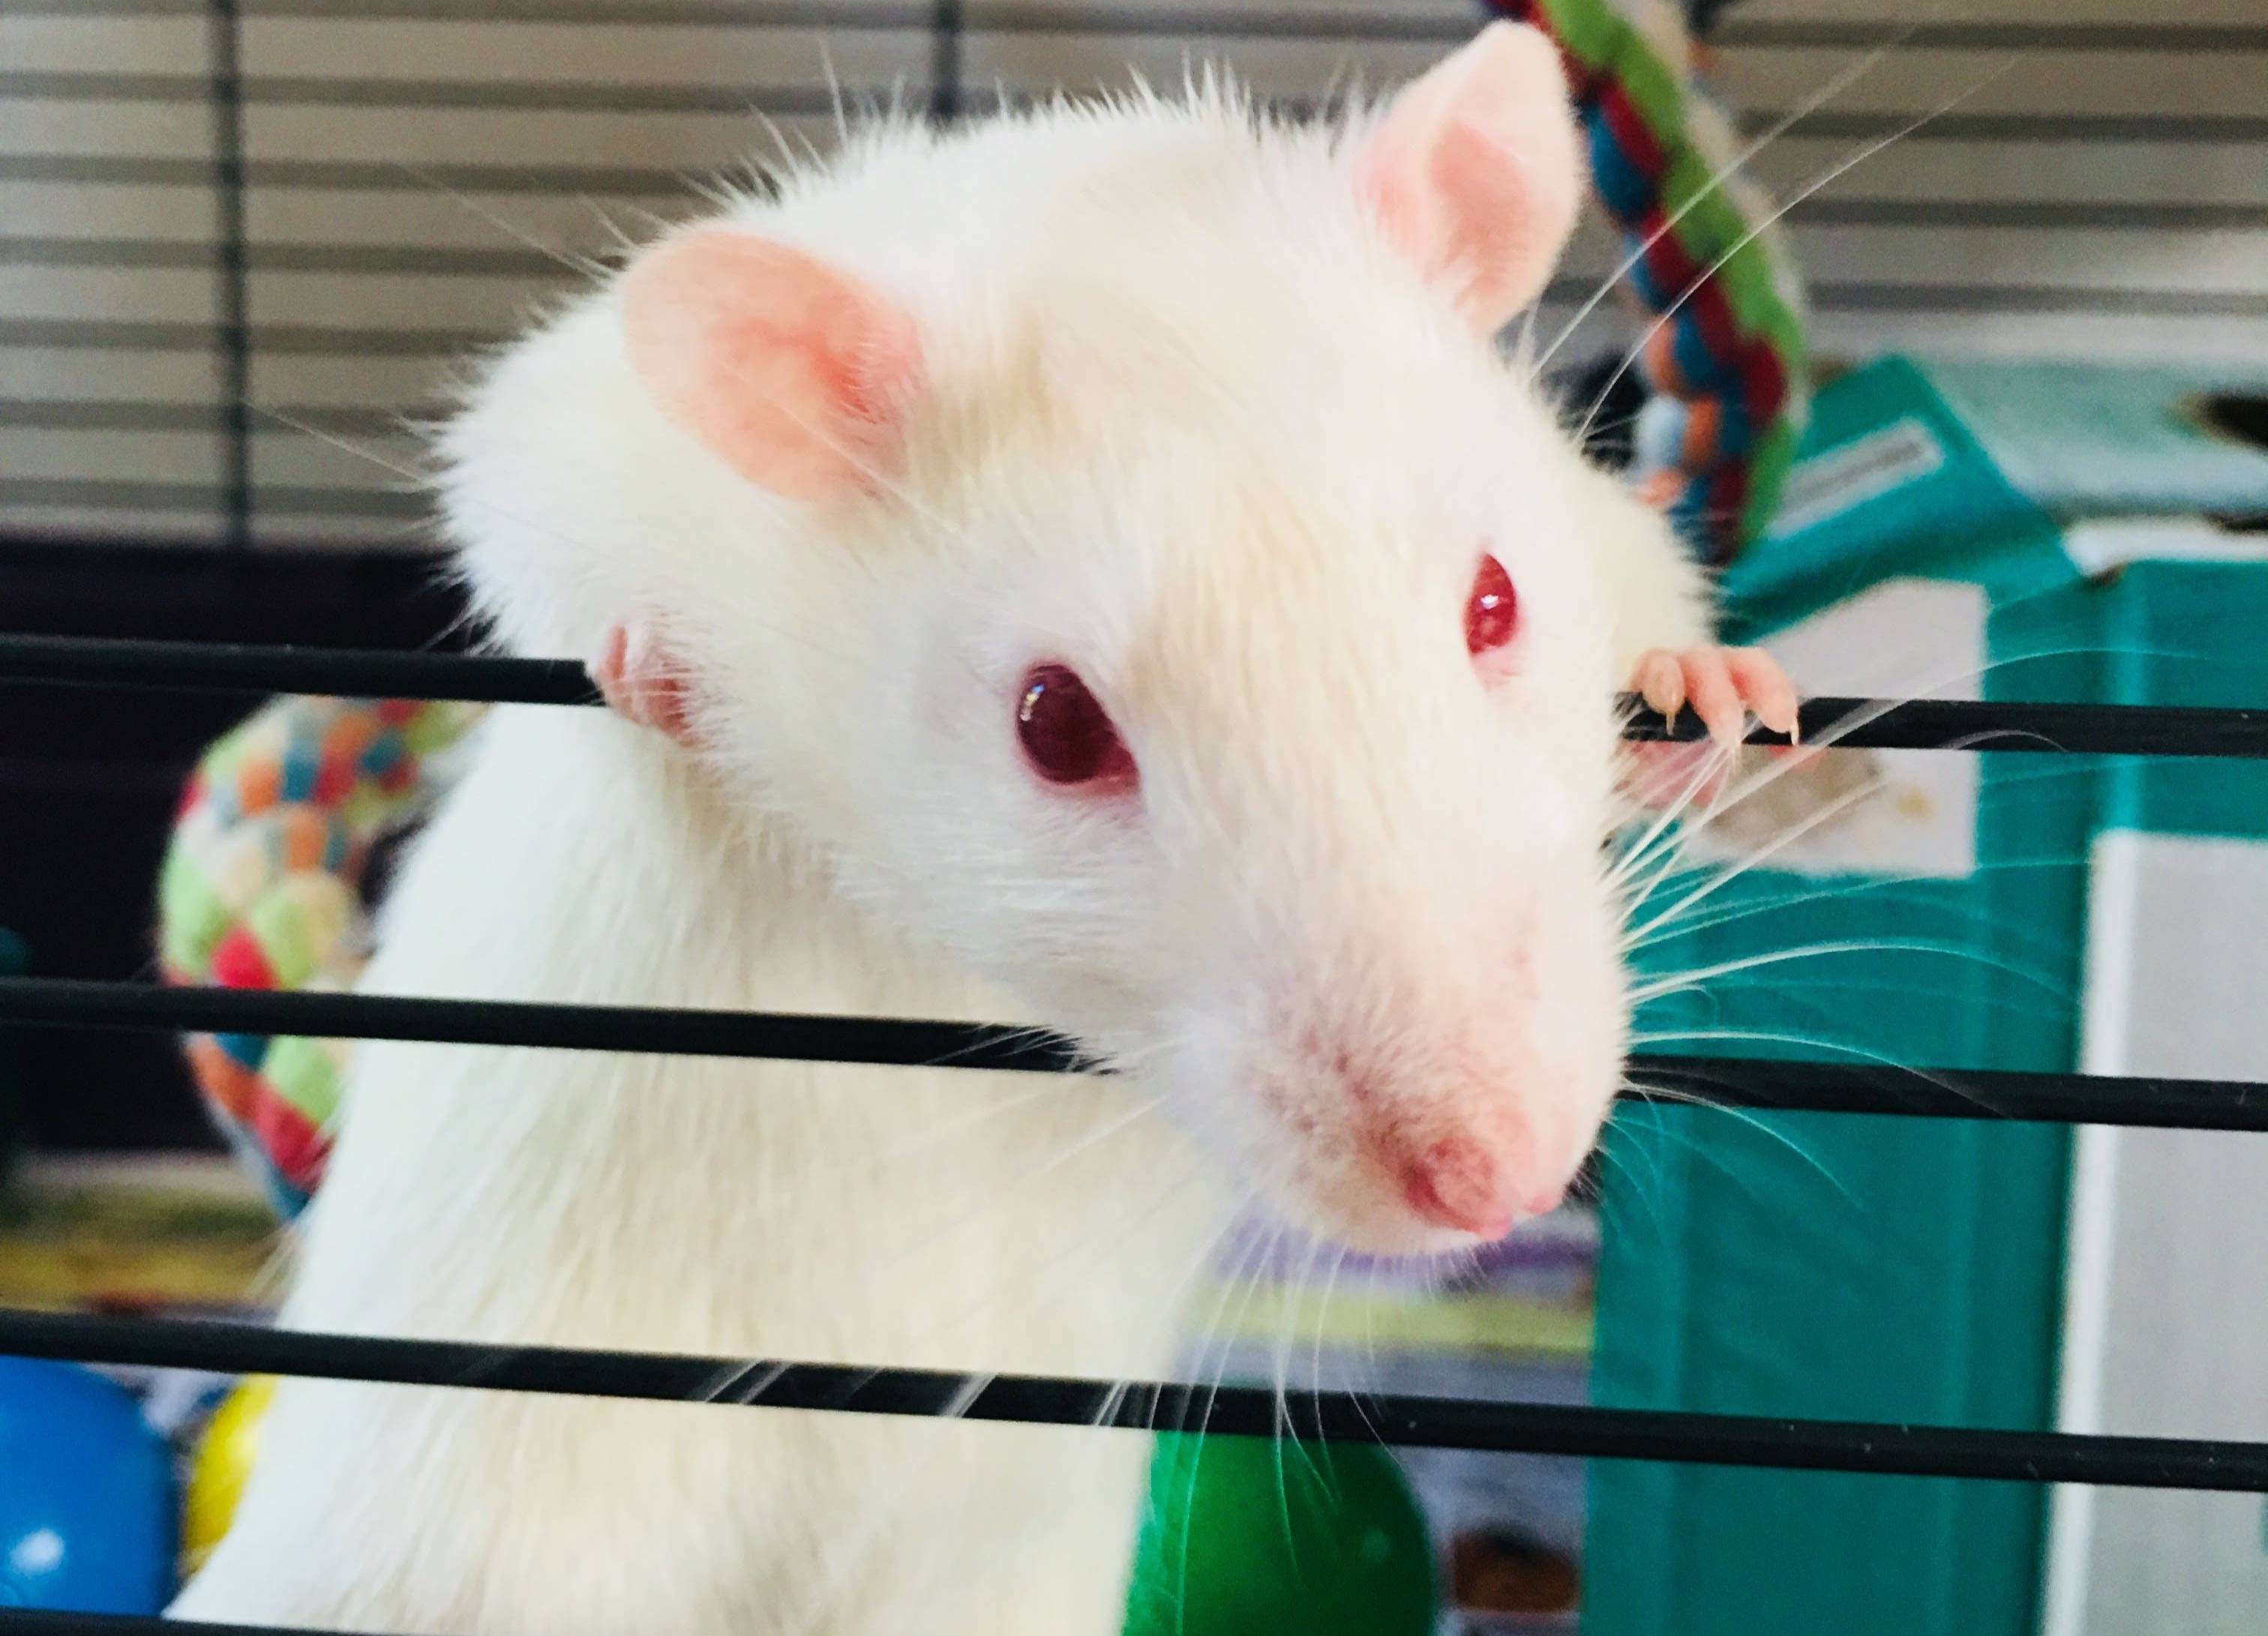 Учёные успешно вживили модель человеческого мозга в голову крысы